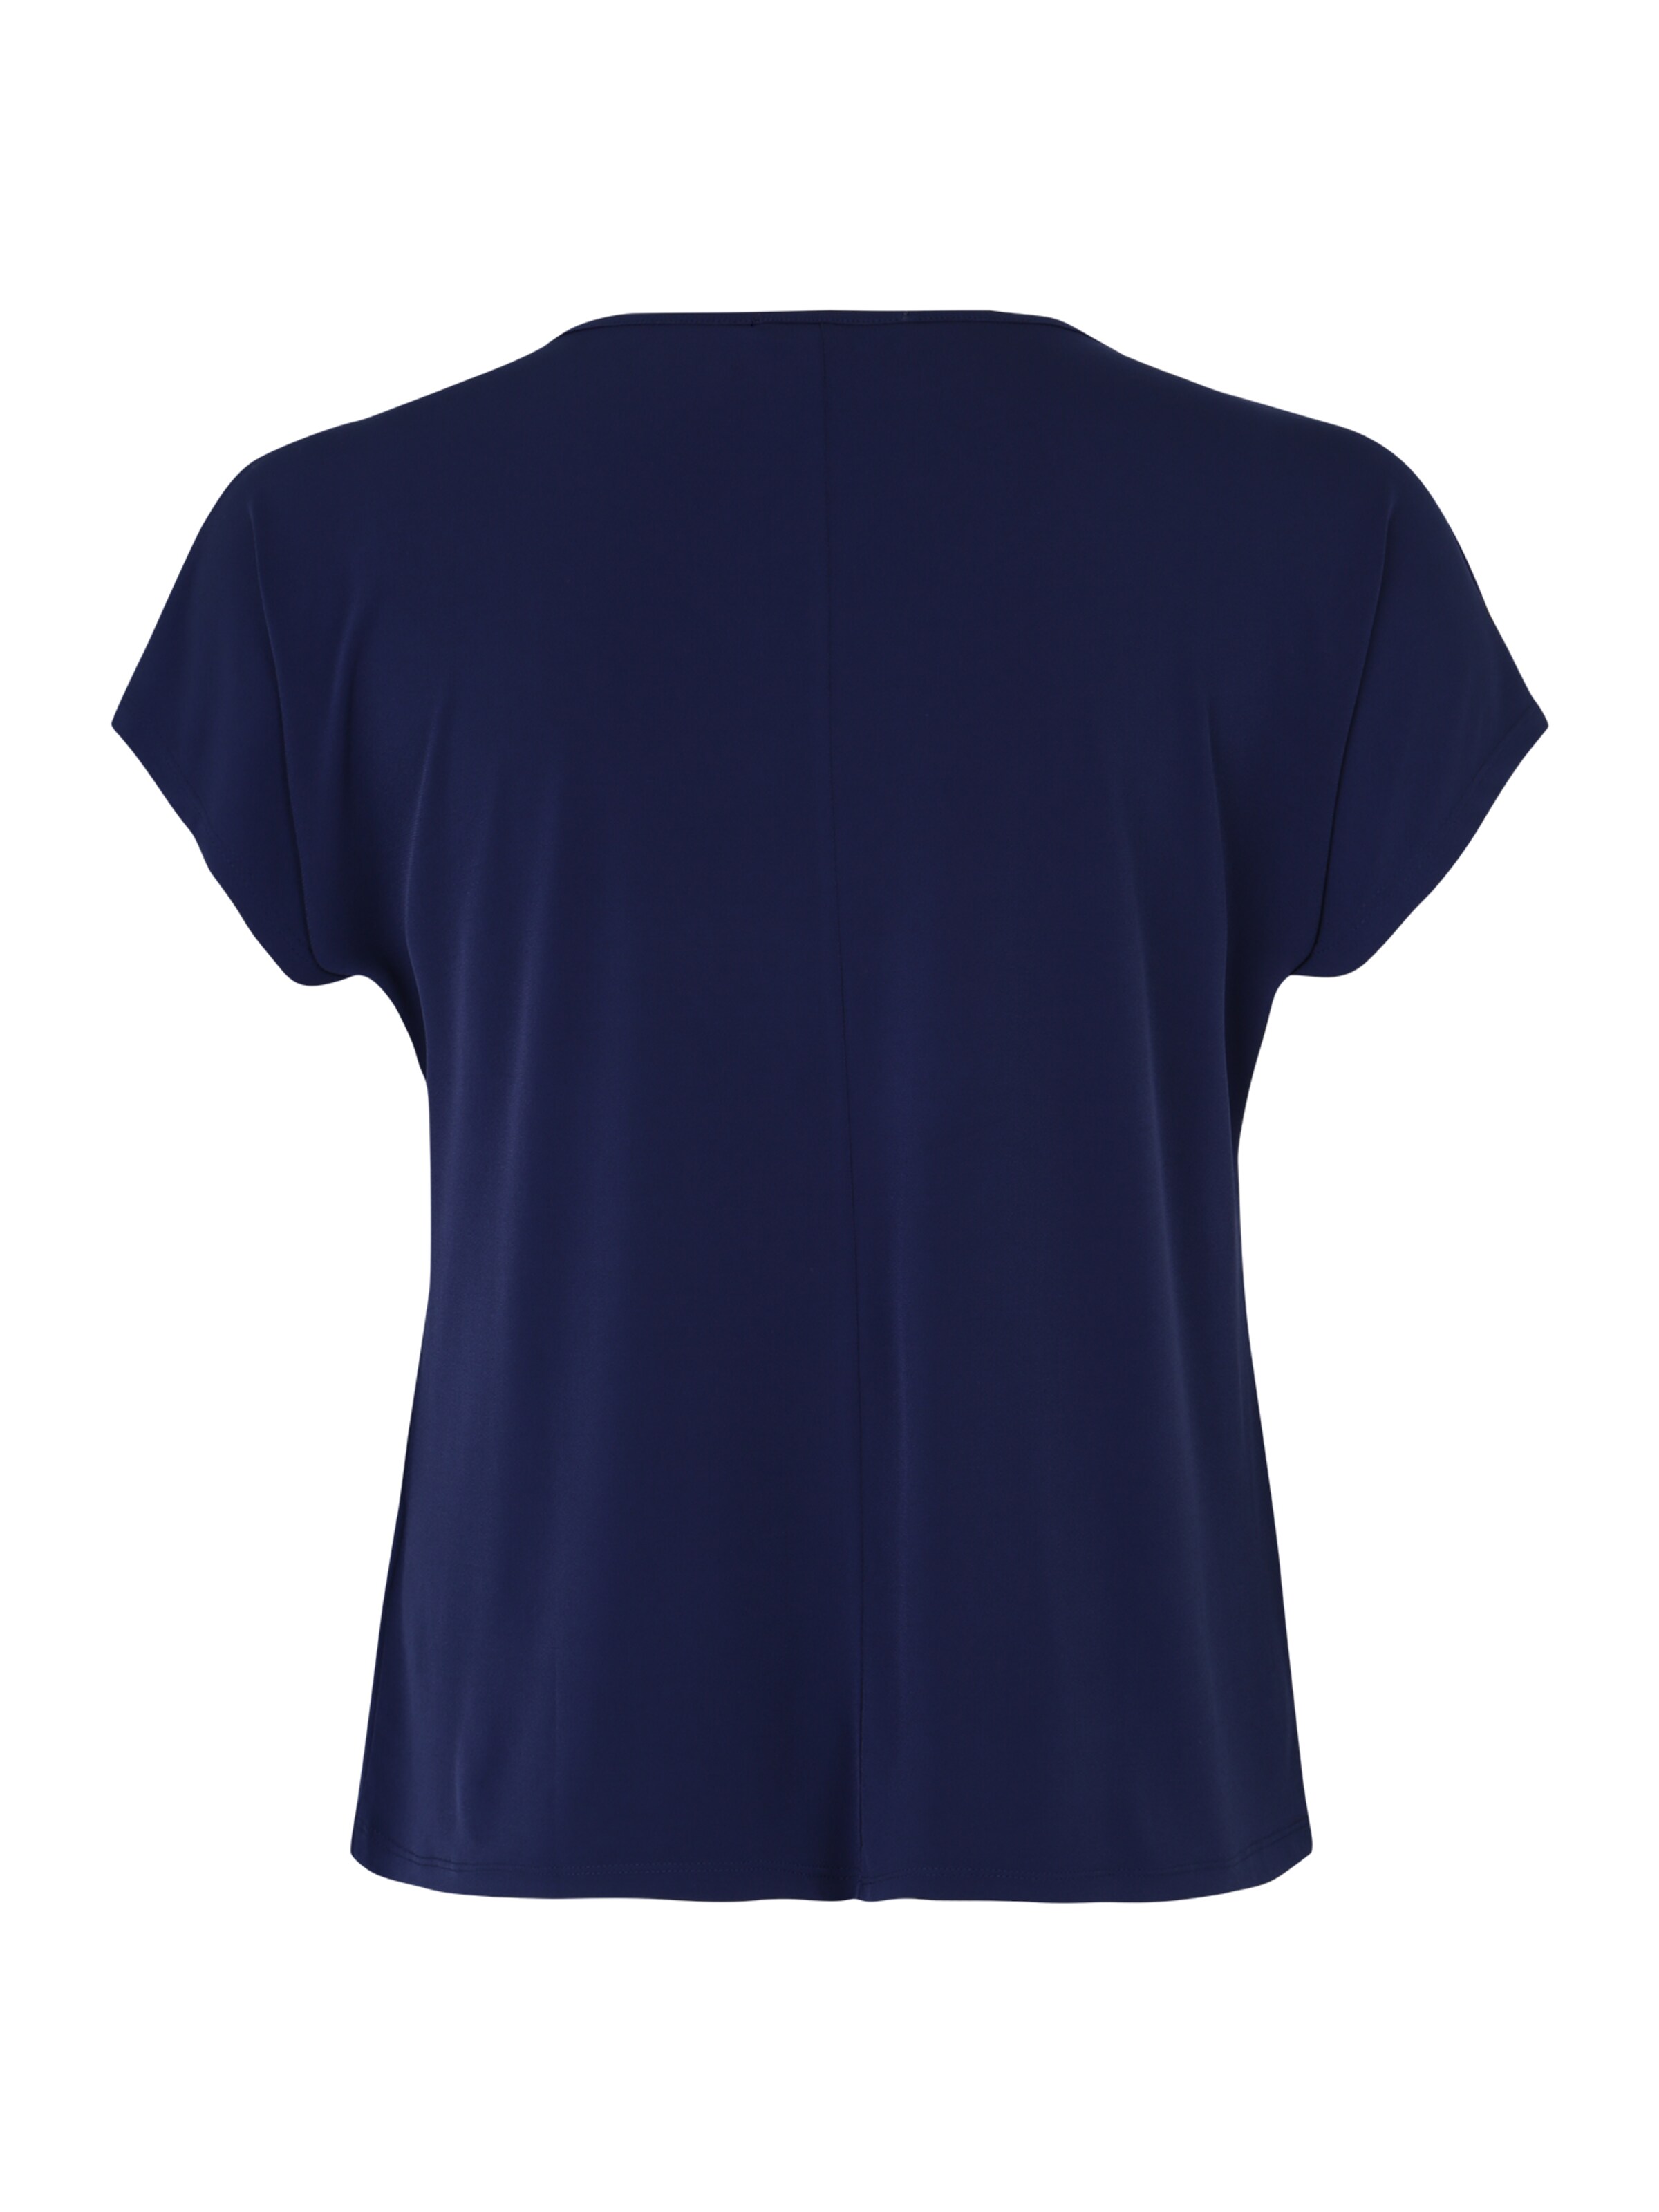 Frauen Shirts & Tops Curvy Shirt 'Mandy' in Navy - NM73976